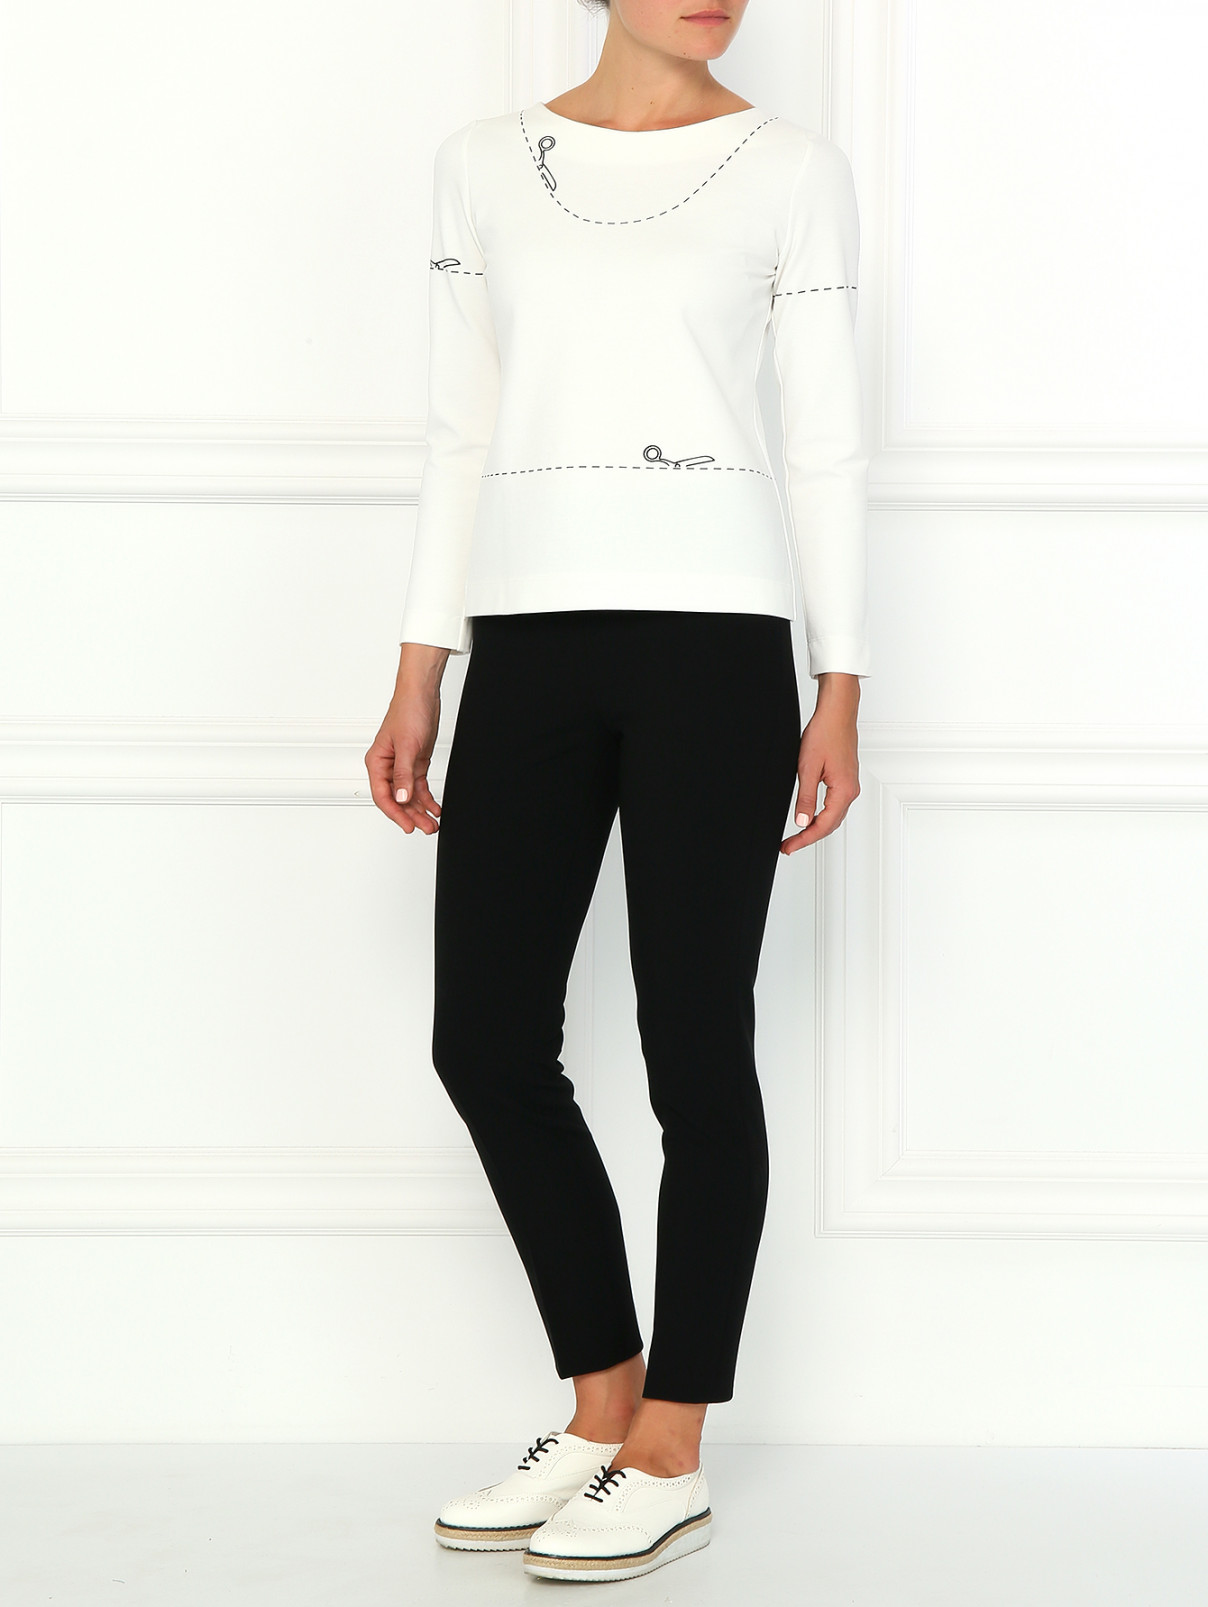 Зауженные брюки с высокой посадкой Moschino Couture  –  Модель Общий вид  – Цвет:  Черный